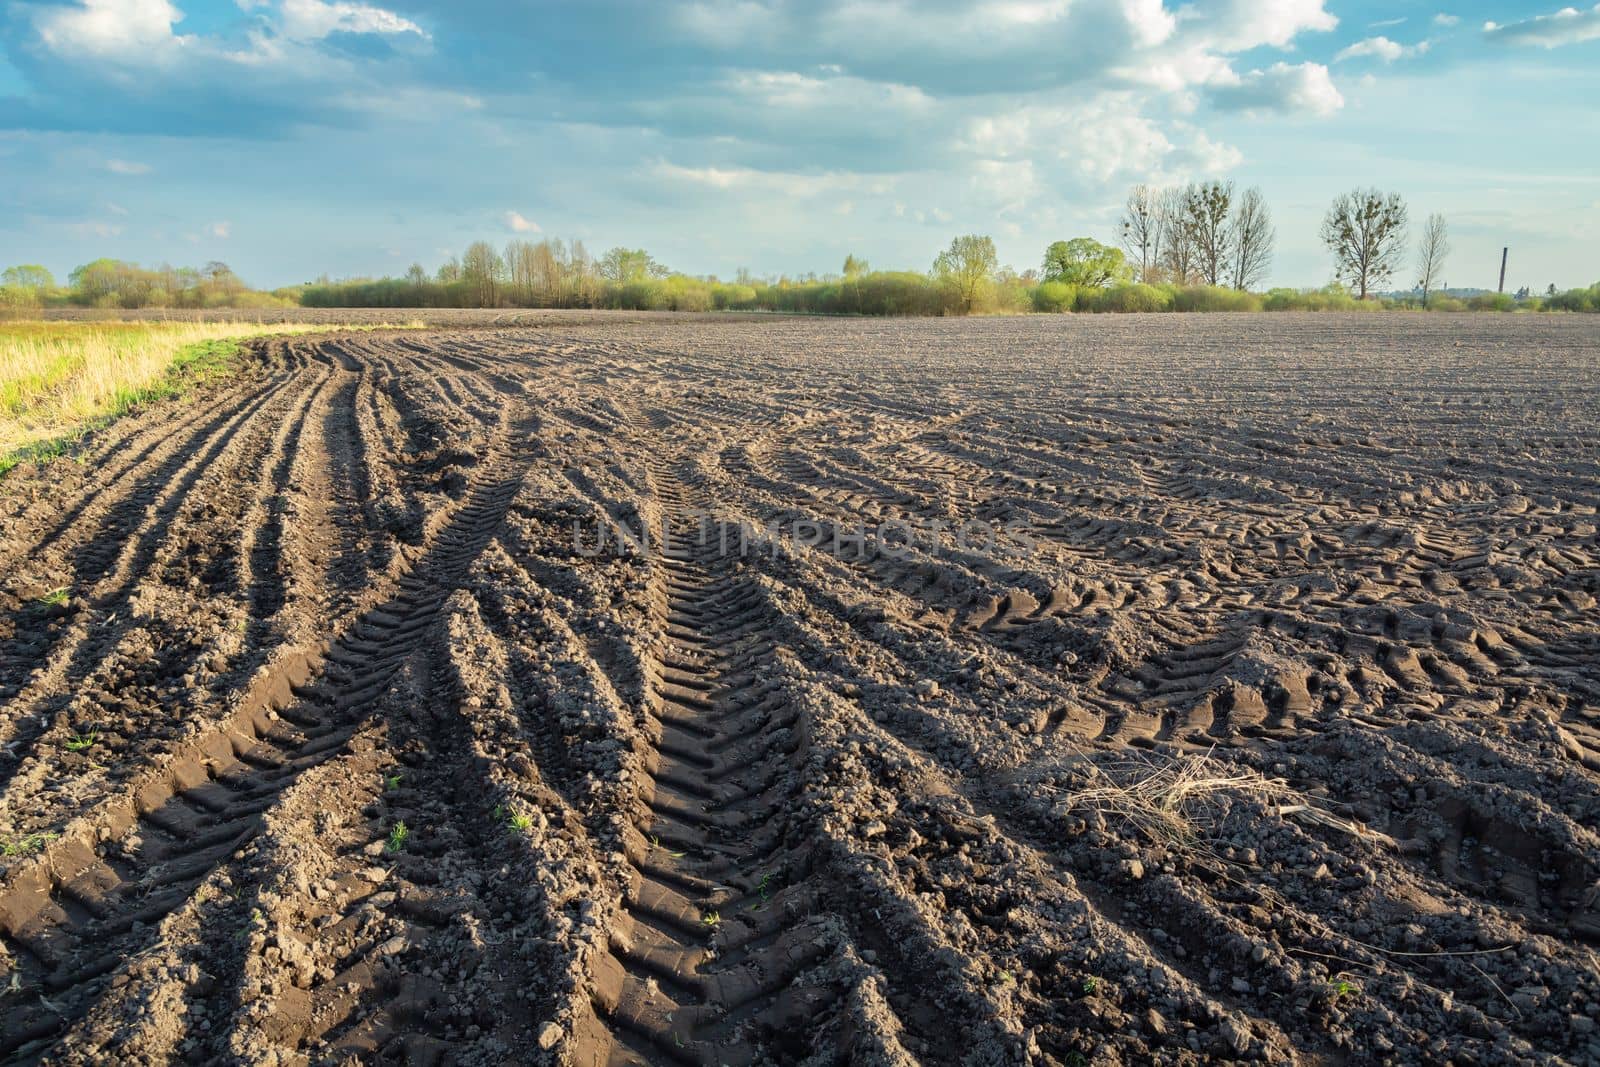 Wheel marks in a plowed field, spring day by darekb22